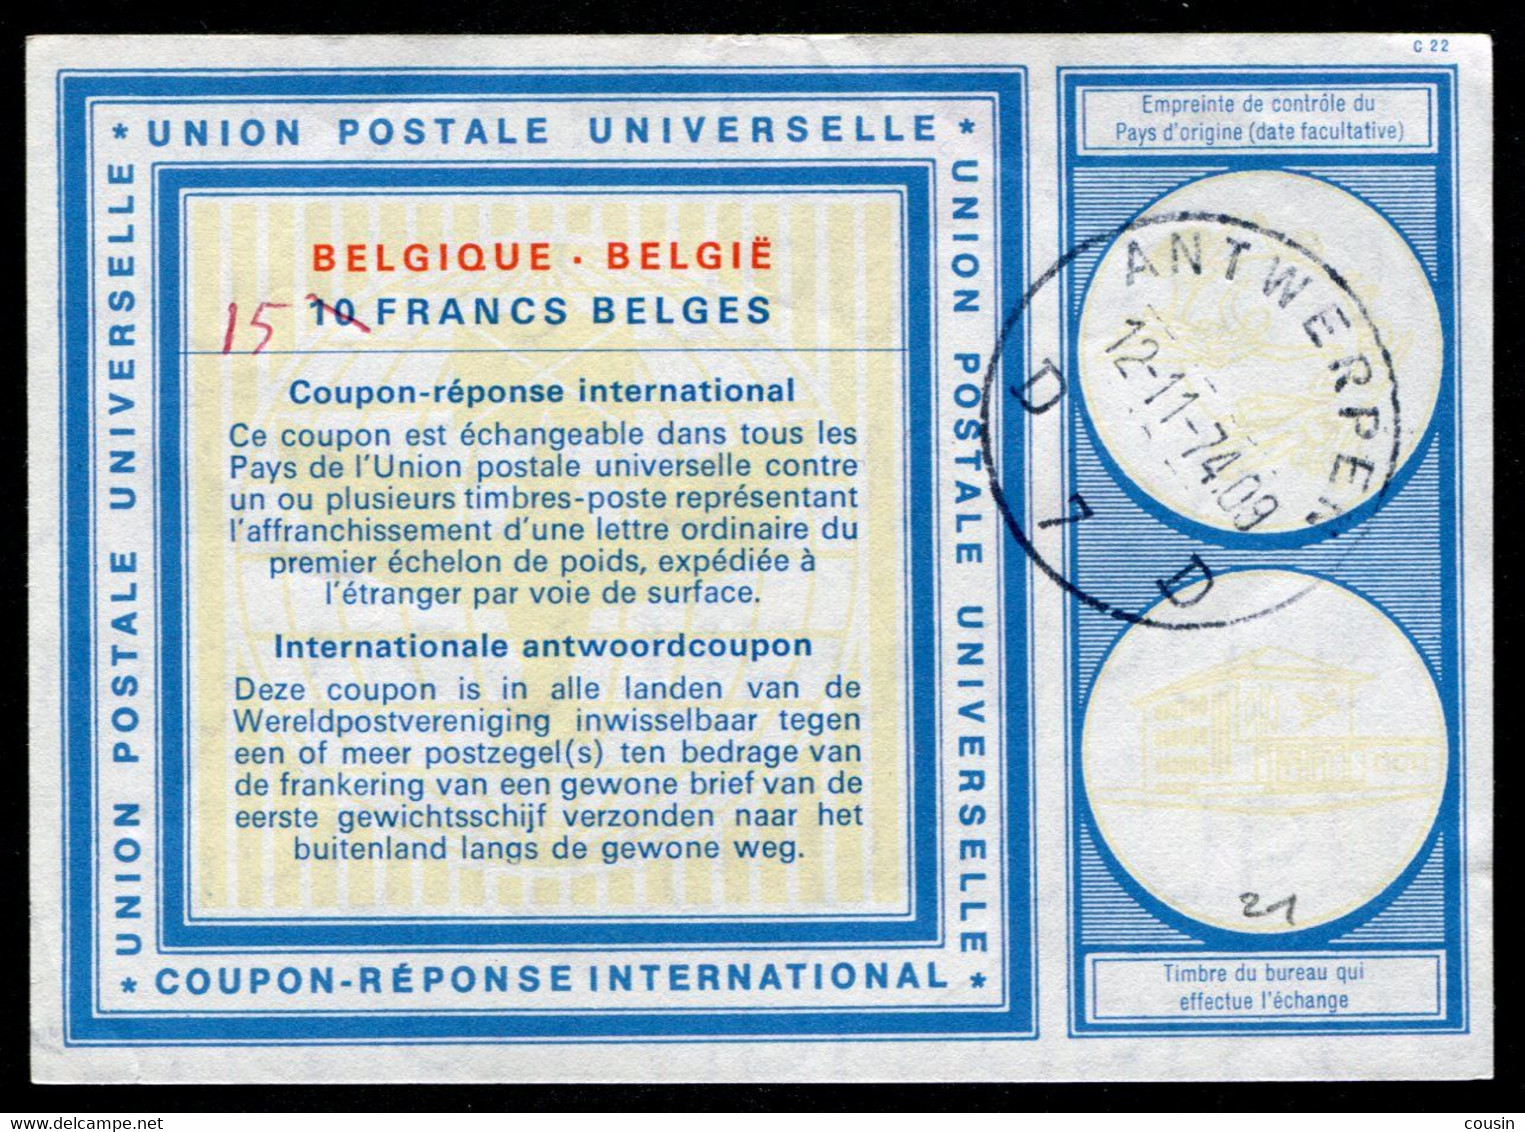 BELGIQUE  International Reply Coupon / Coupon Réponse International - Coupons-réponse Internationaux